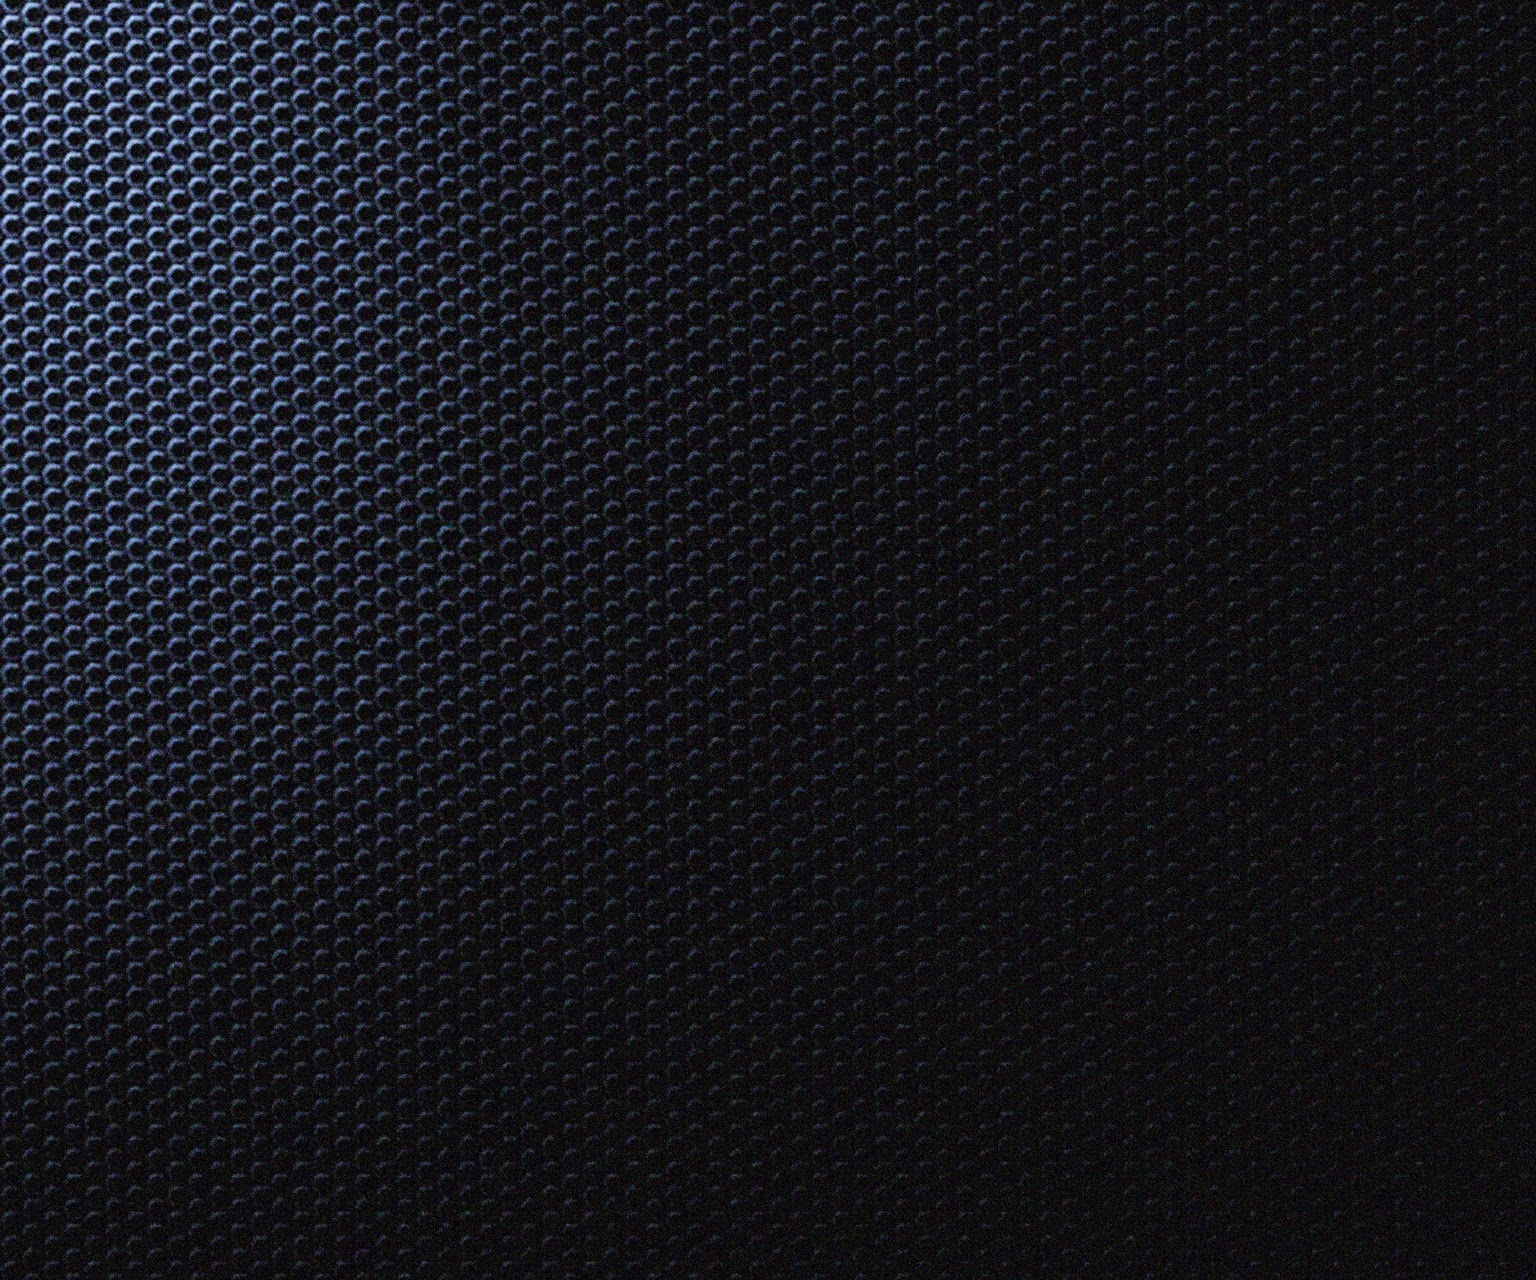 BlackBerry Z10 HD Wallpapers Simple 2014 - BlackBerry 10 ...